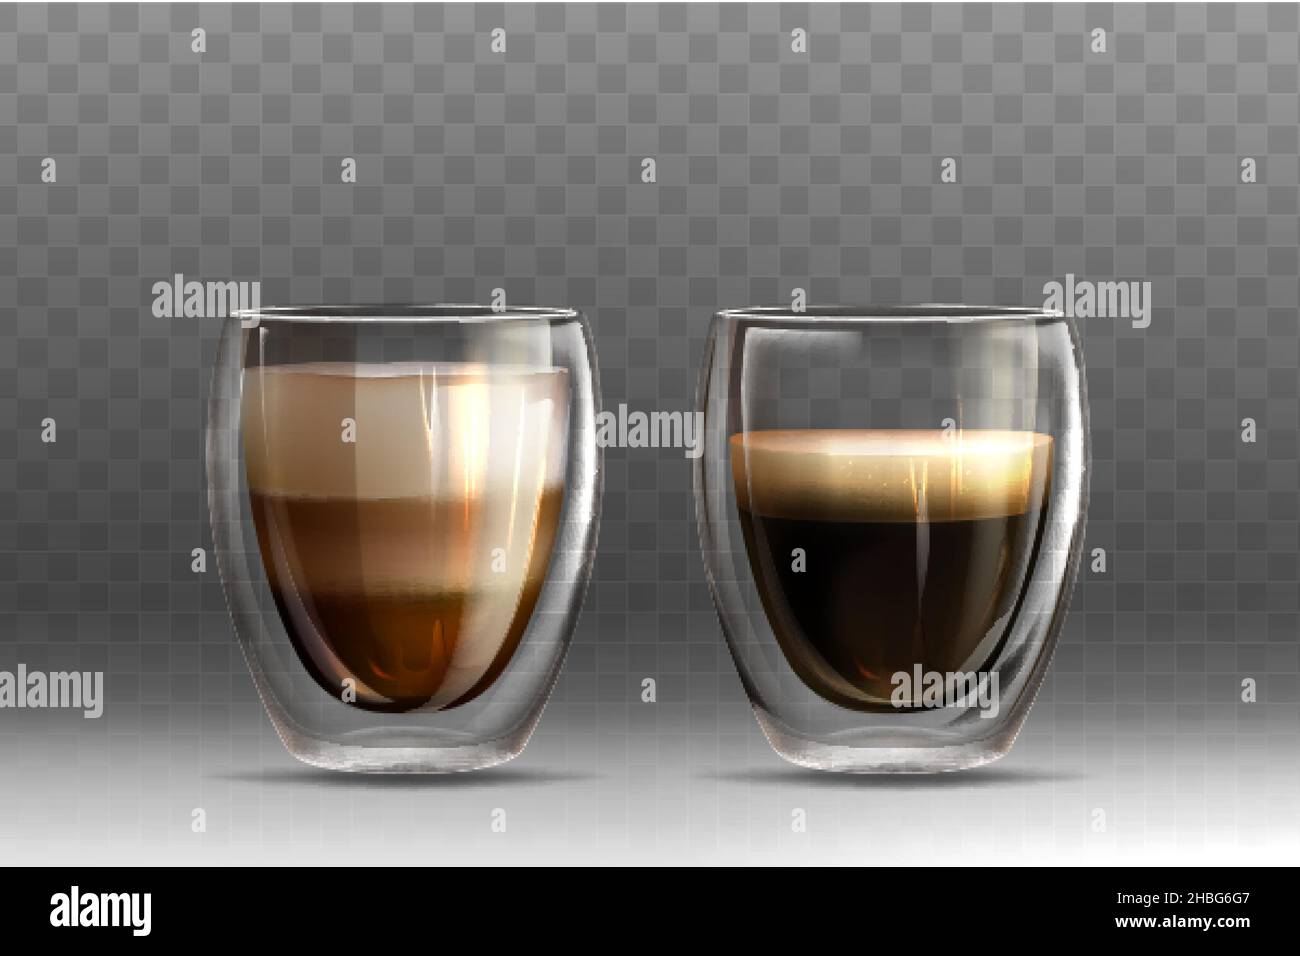 Realistico set di illustrazione vettoriale di caffè caldo in tazze di vetro  con doppia parete su sfondo grigio. Bevanda americana e cappuccino con  schiuma di latte. Modello di mockup per branding o